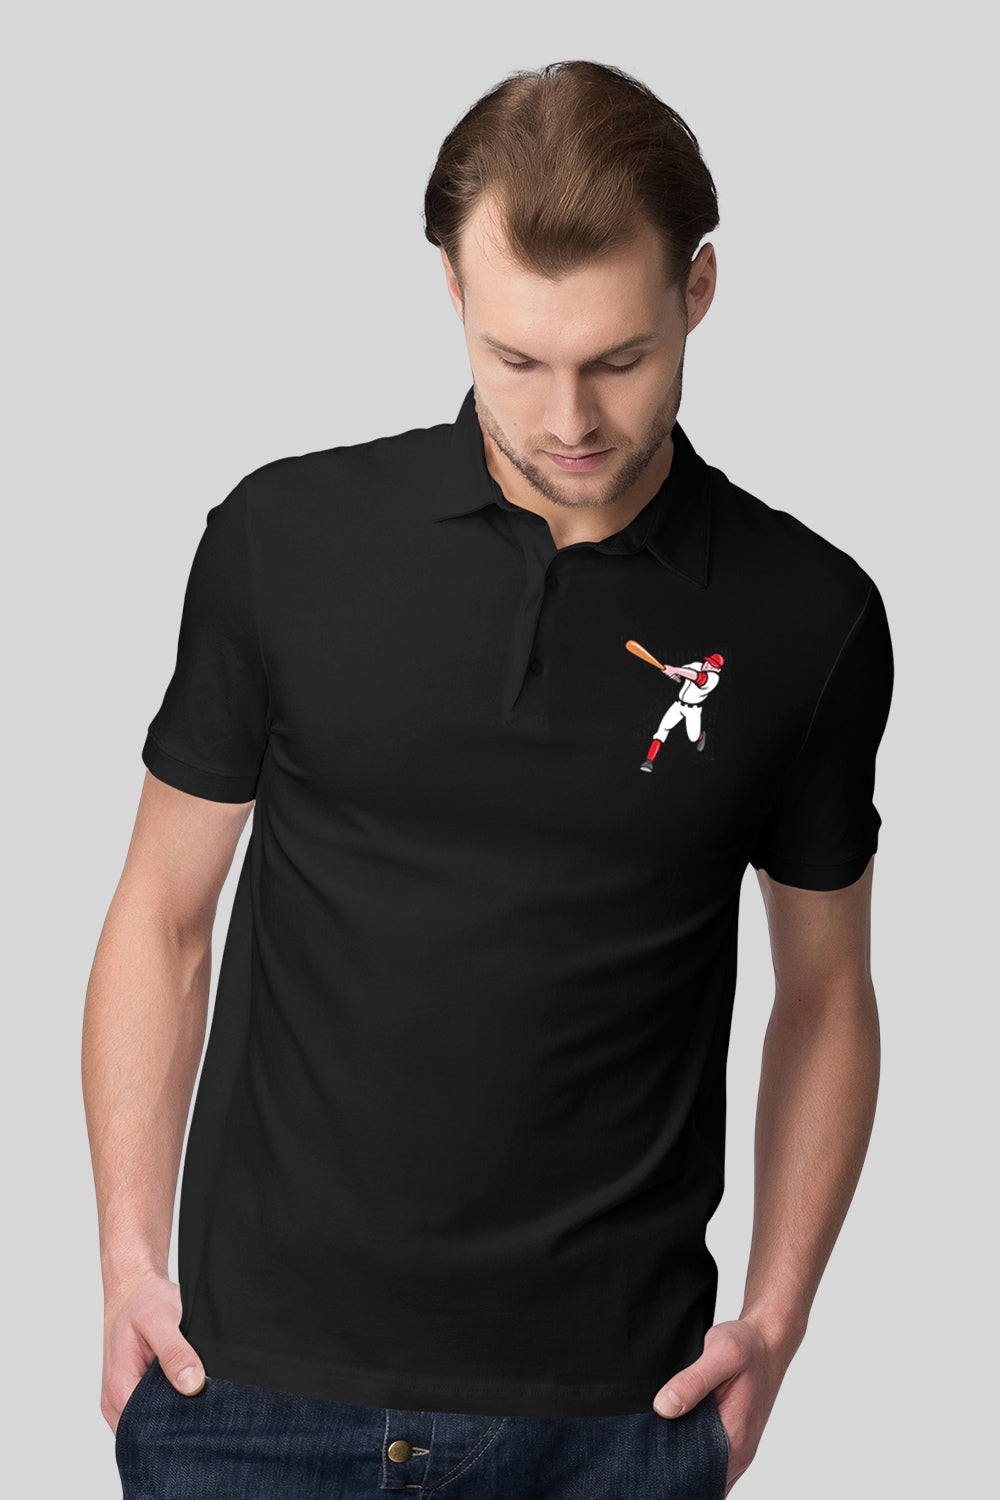 Baseball Pocket Printed Black Polo Tshirt